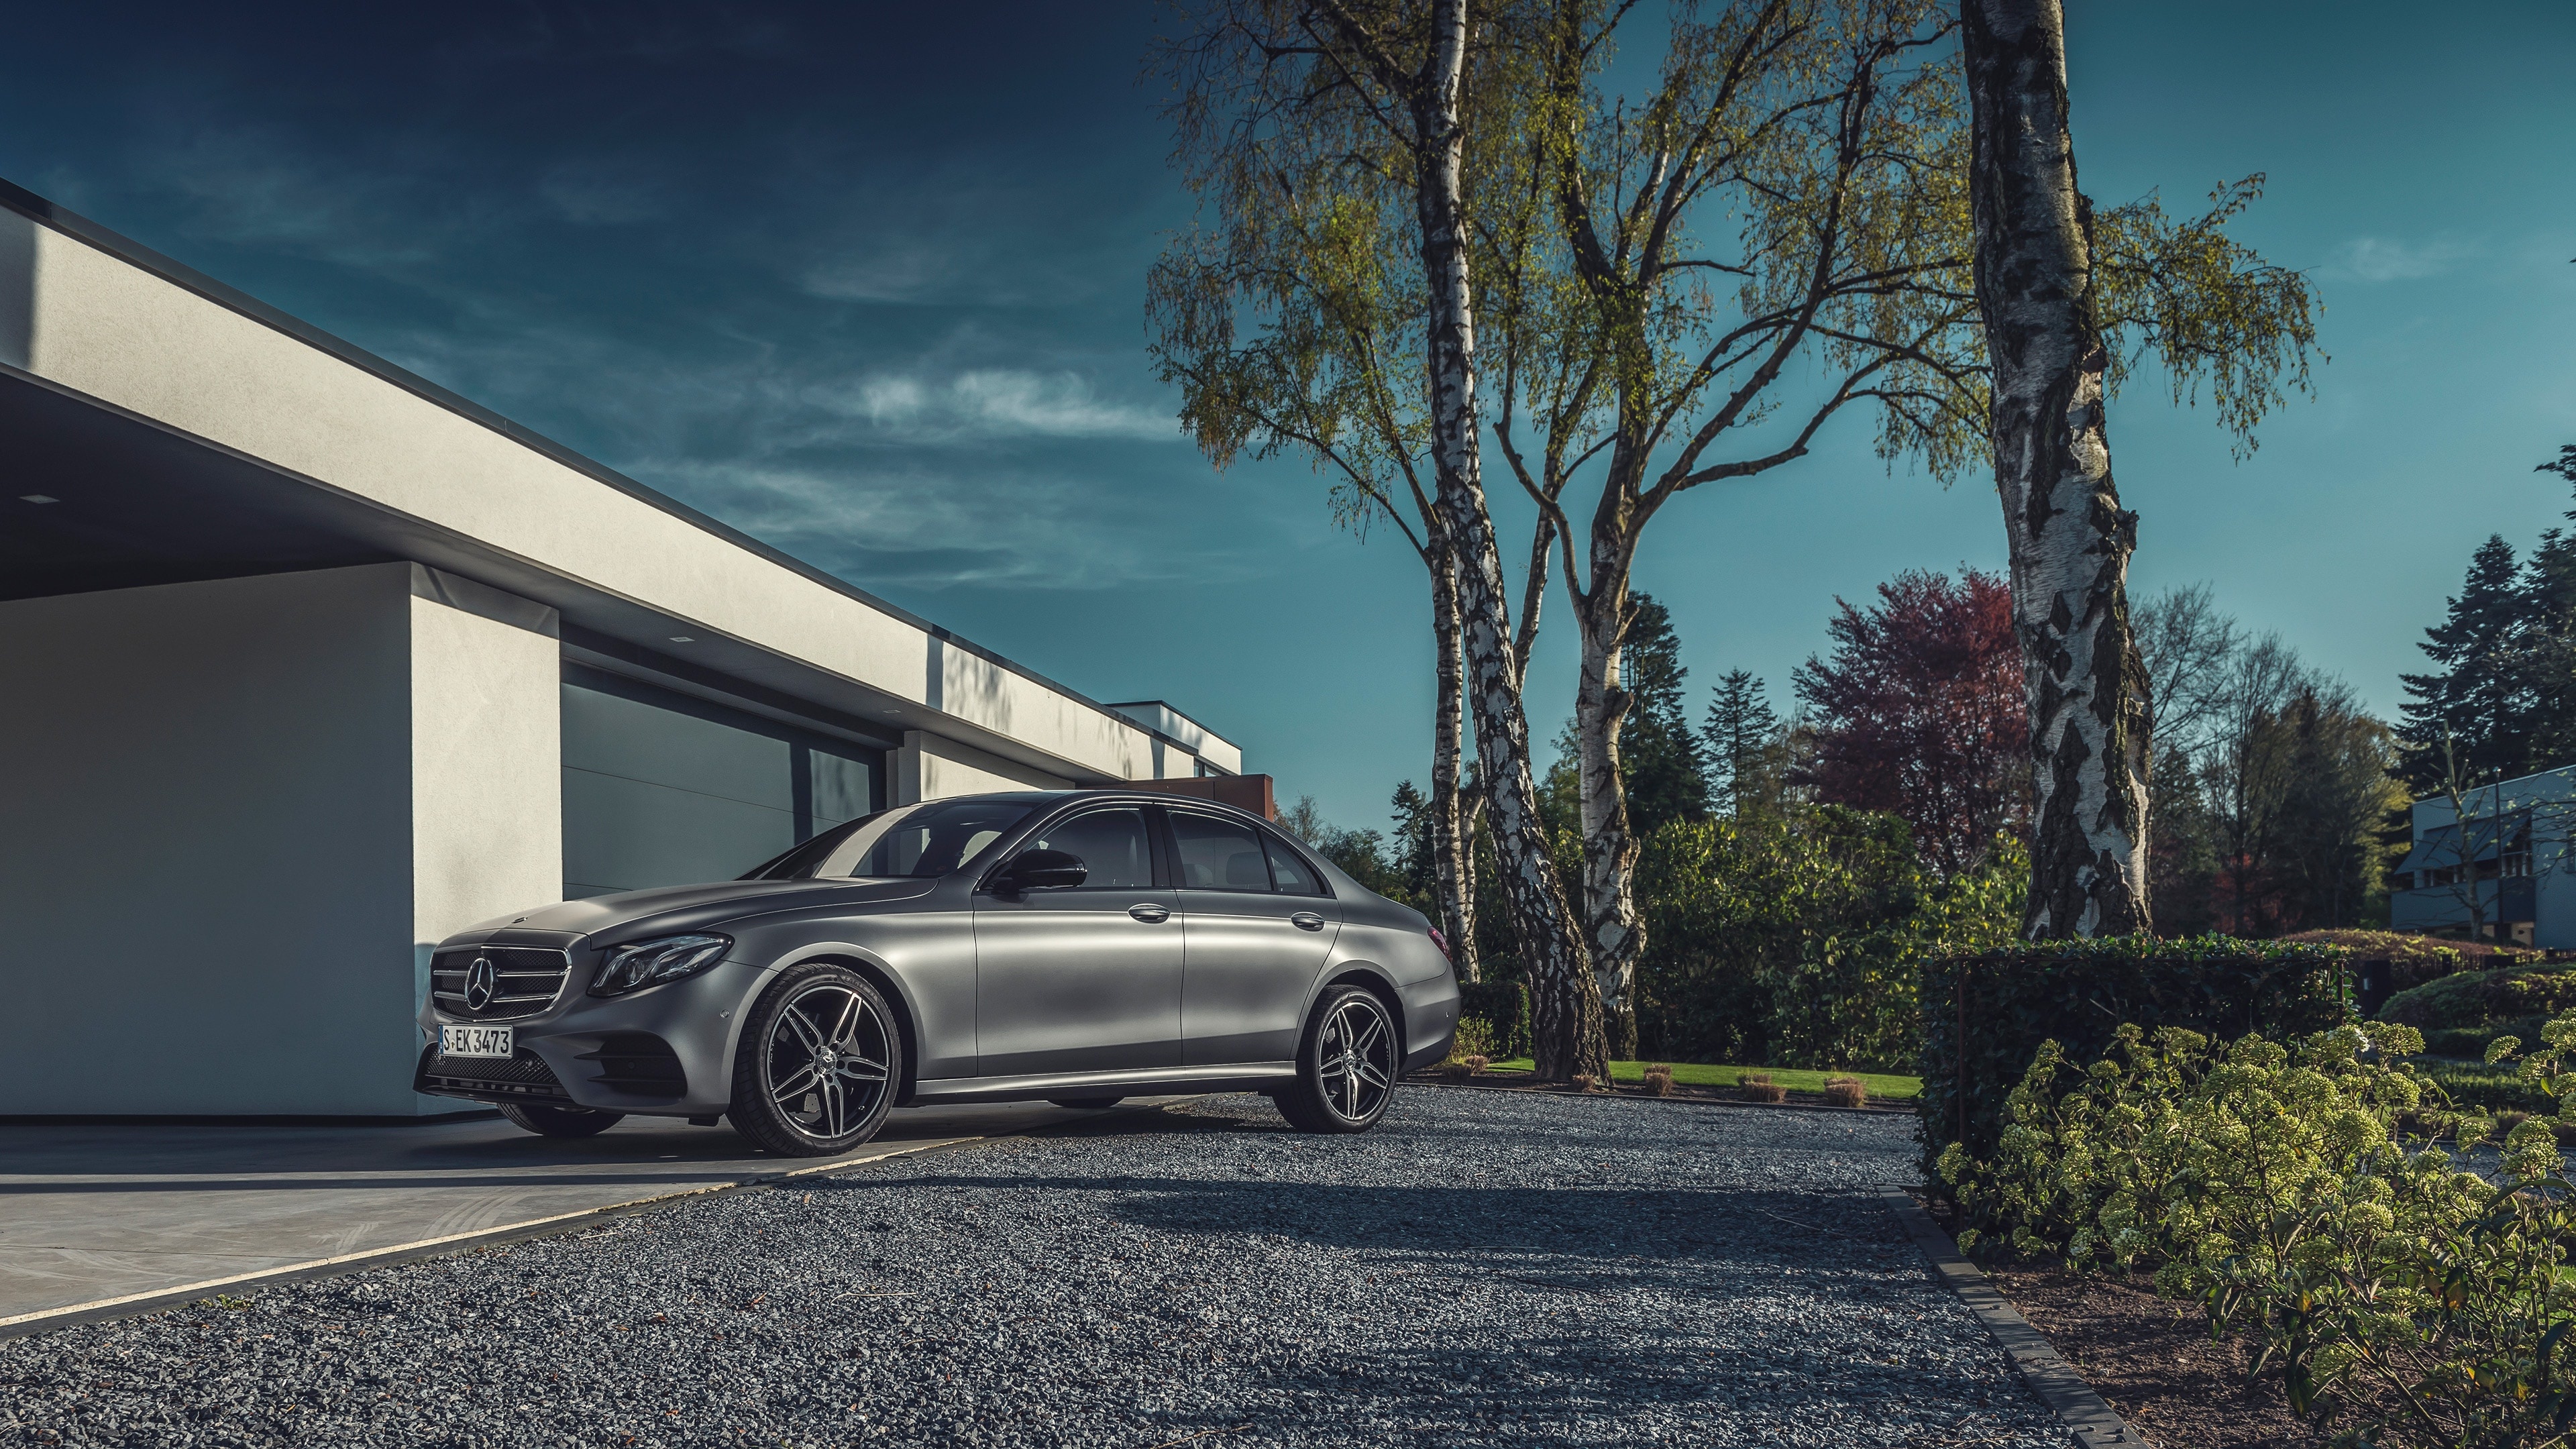 Mercedes-Benz S-Class, Benz wallpapers, Luxurious elegance, 3840x2160 4K Desktop